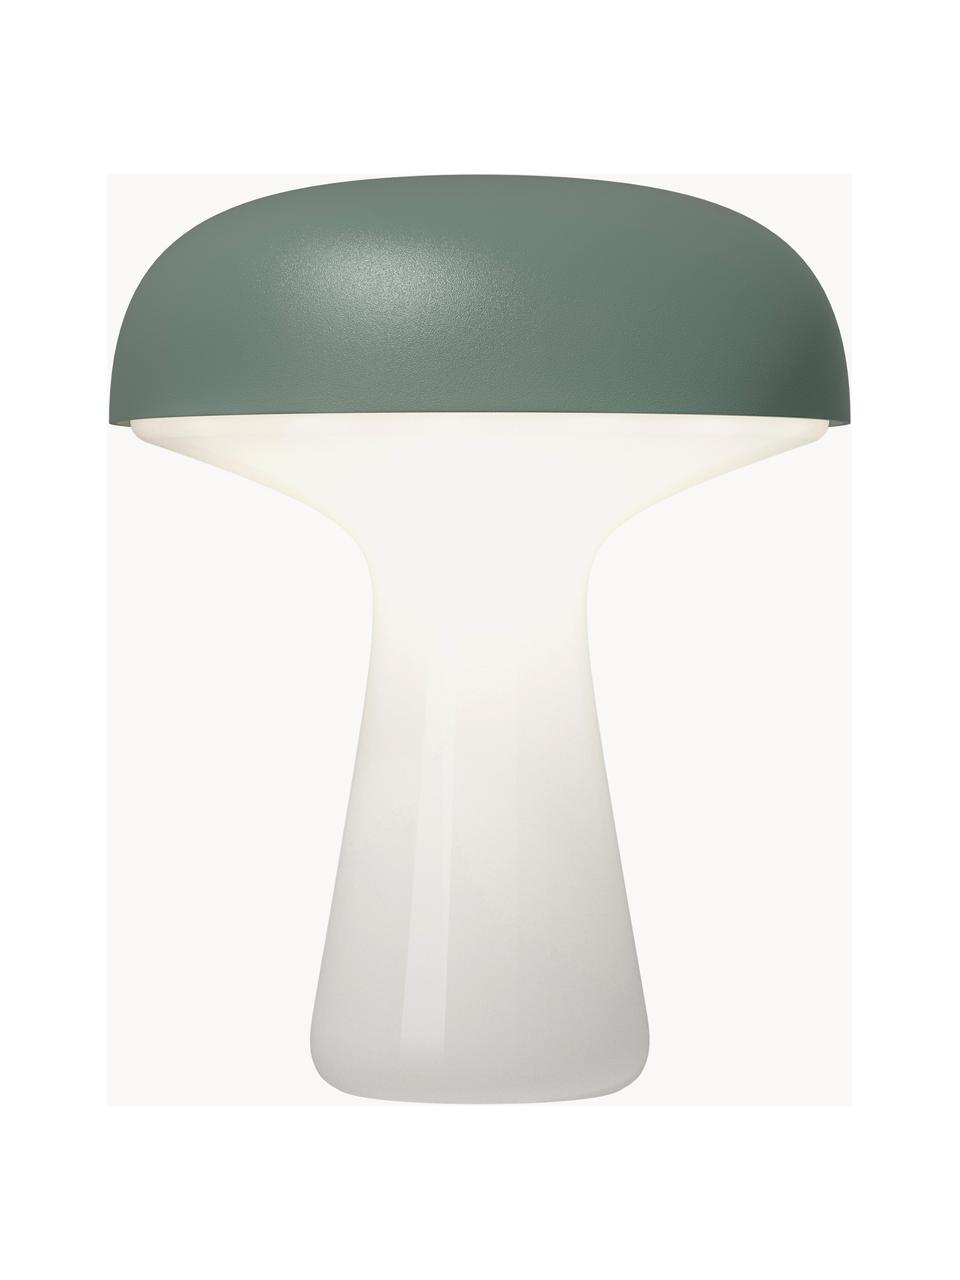 Mobilna lampa zewnętrzna LED z funkcją przyciemniania My T, Stelaż: szkło, Szałwiowy zielony, biały, Ø 20 x W 25 cm